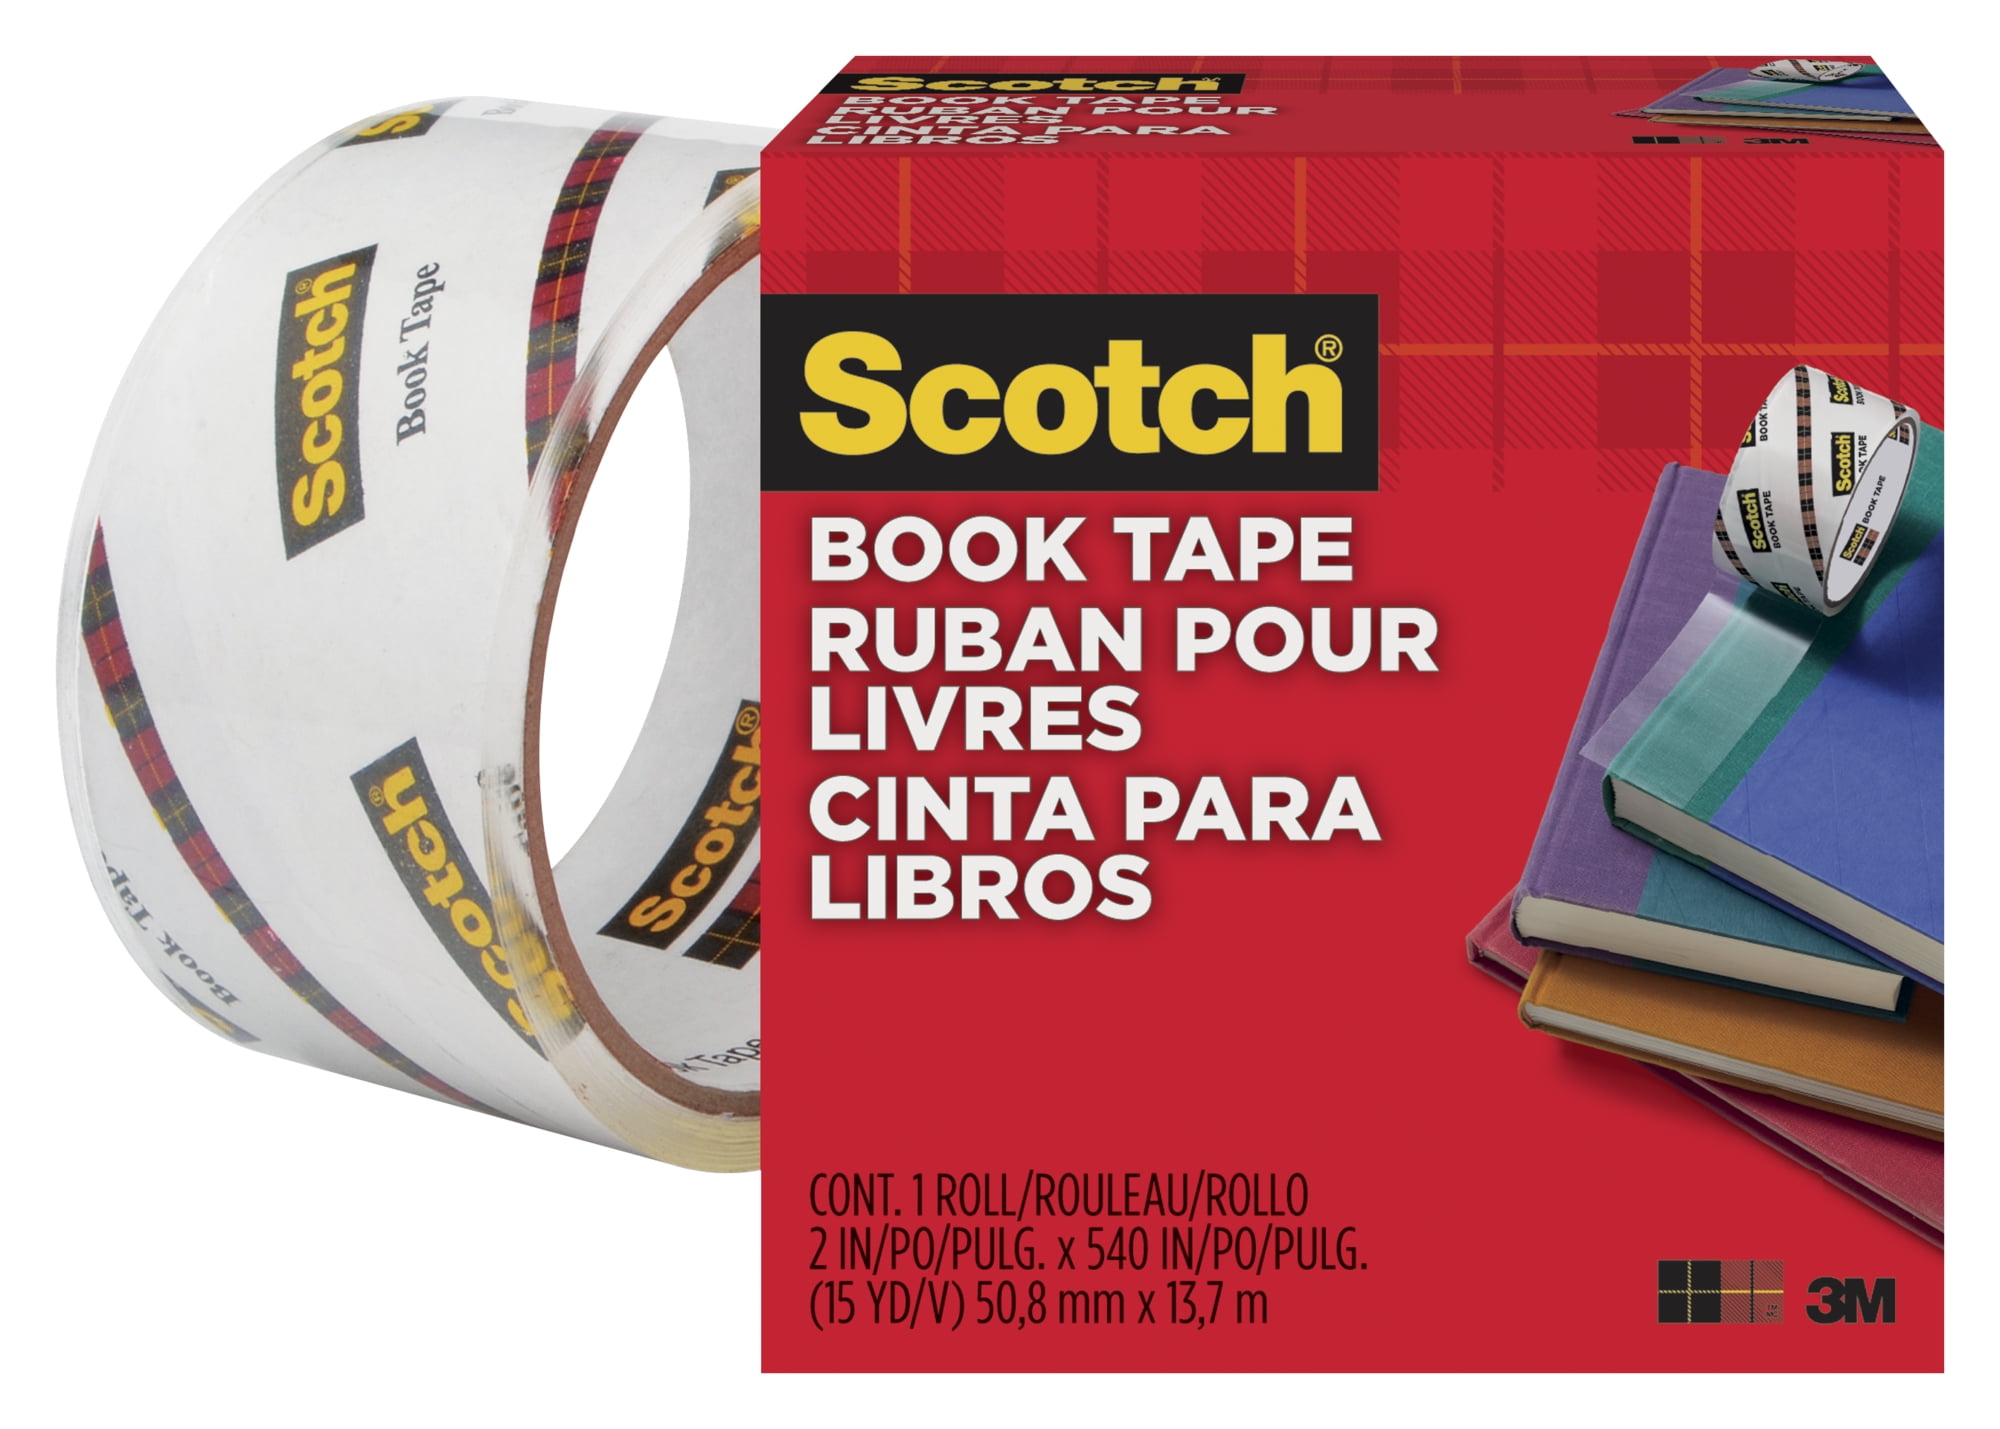 Scotch Book Tape 845 2 Inches x 15 Yards